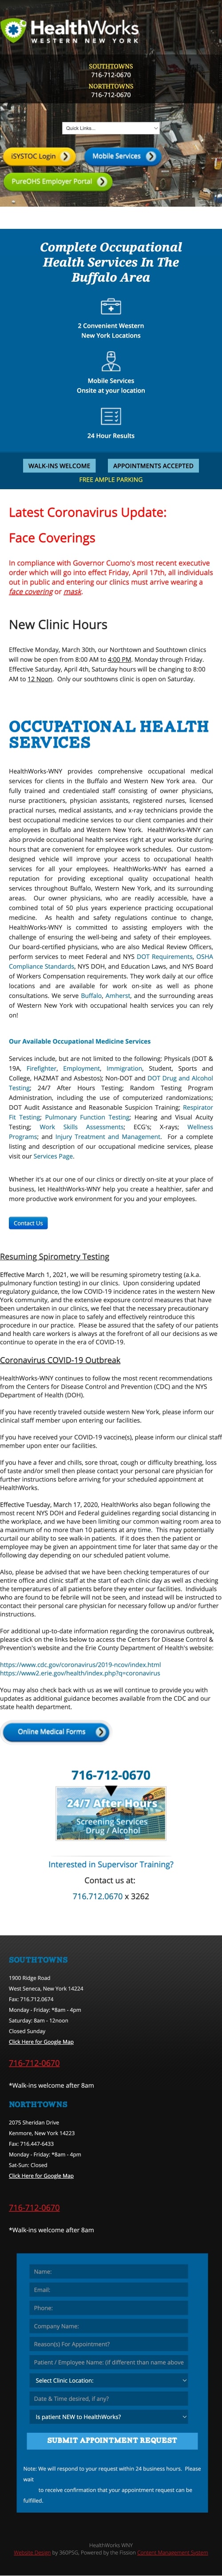 Healthworks-WNY Website - Mobile